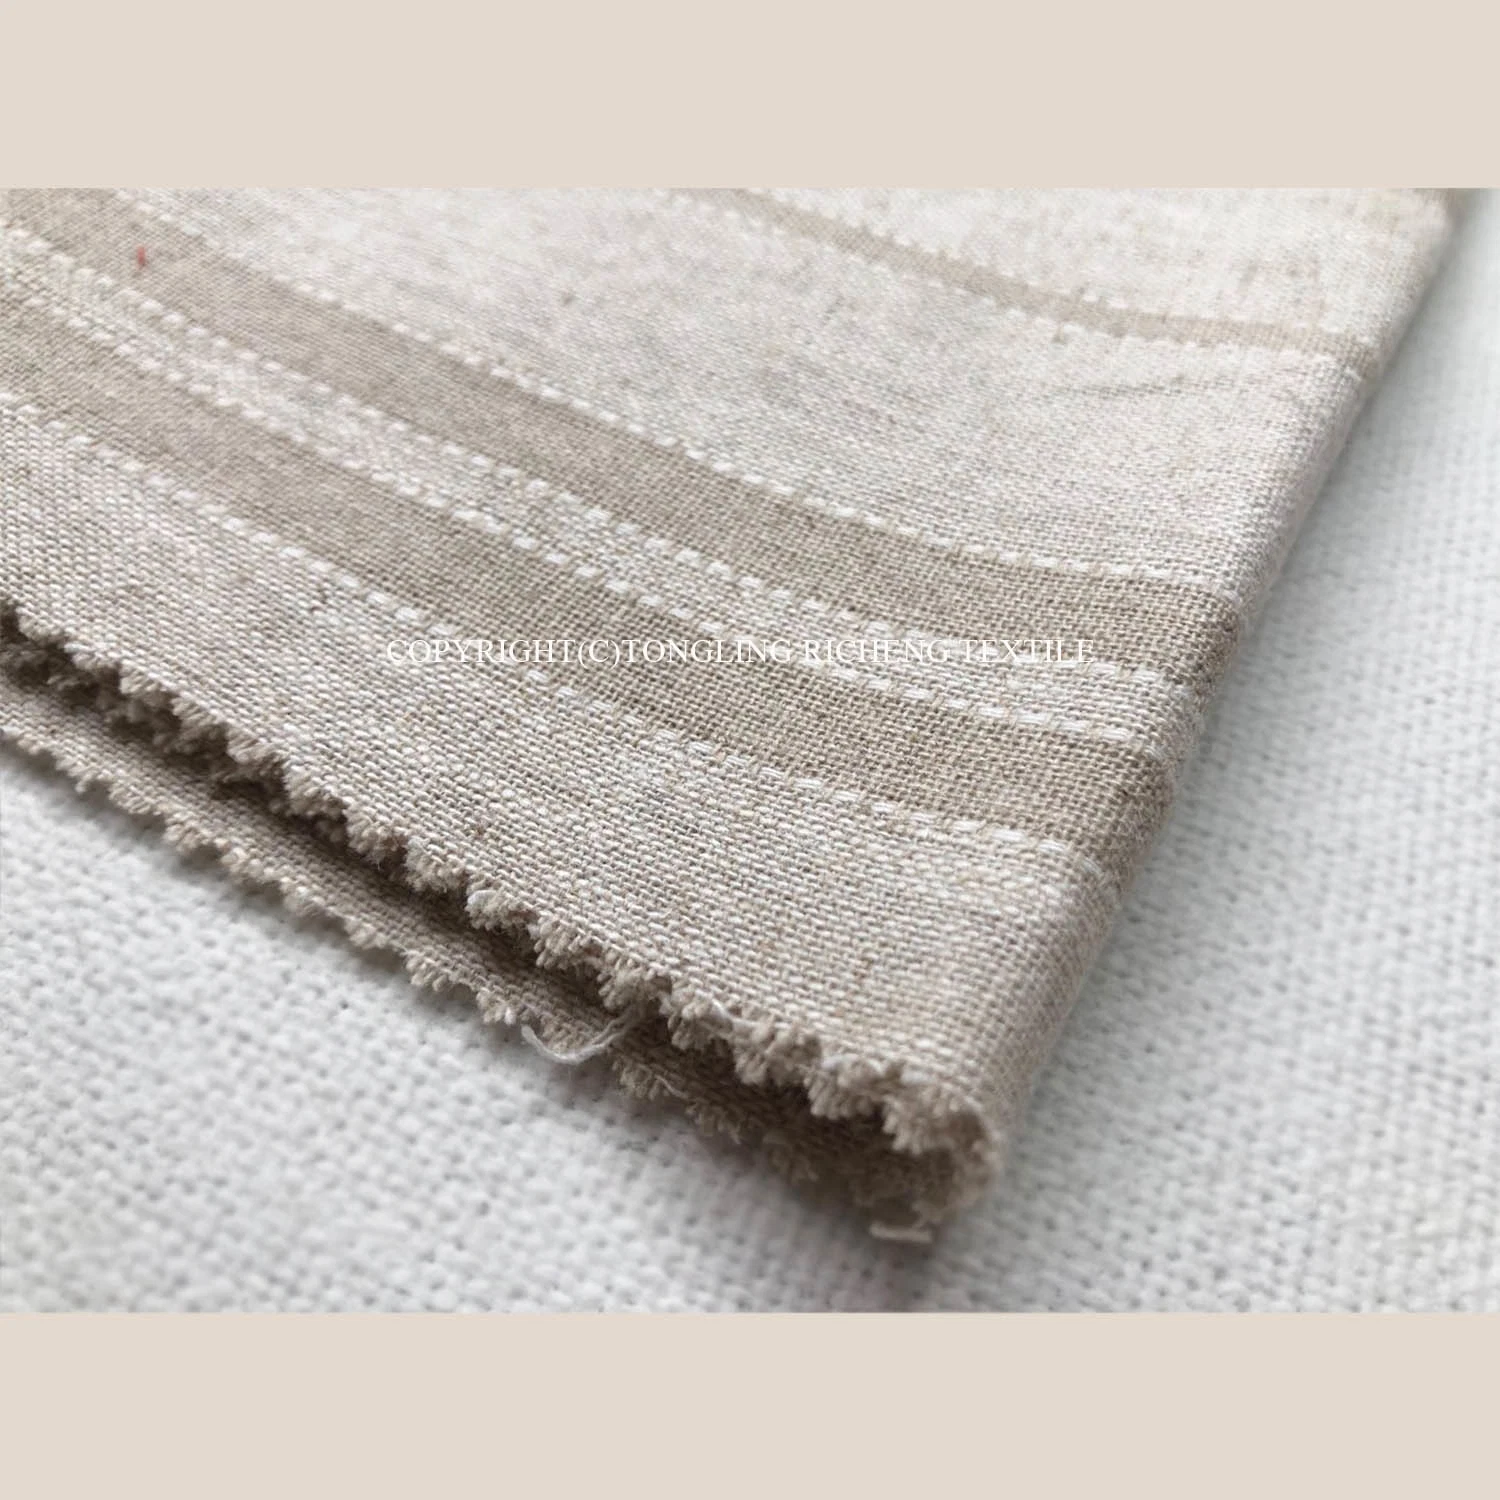 Le linge de maison en tissu de coton pour le ménage des fournisseurs et le Vêtement 15*15 fils teints